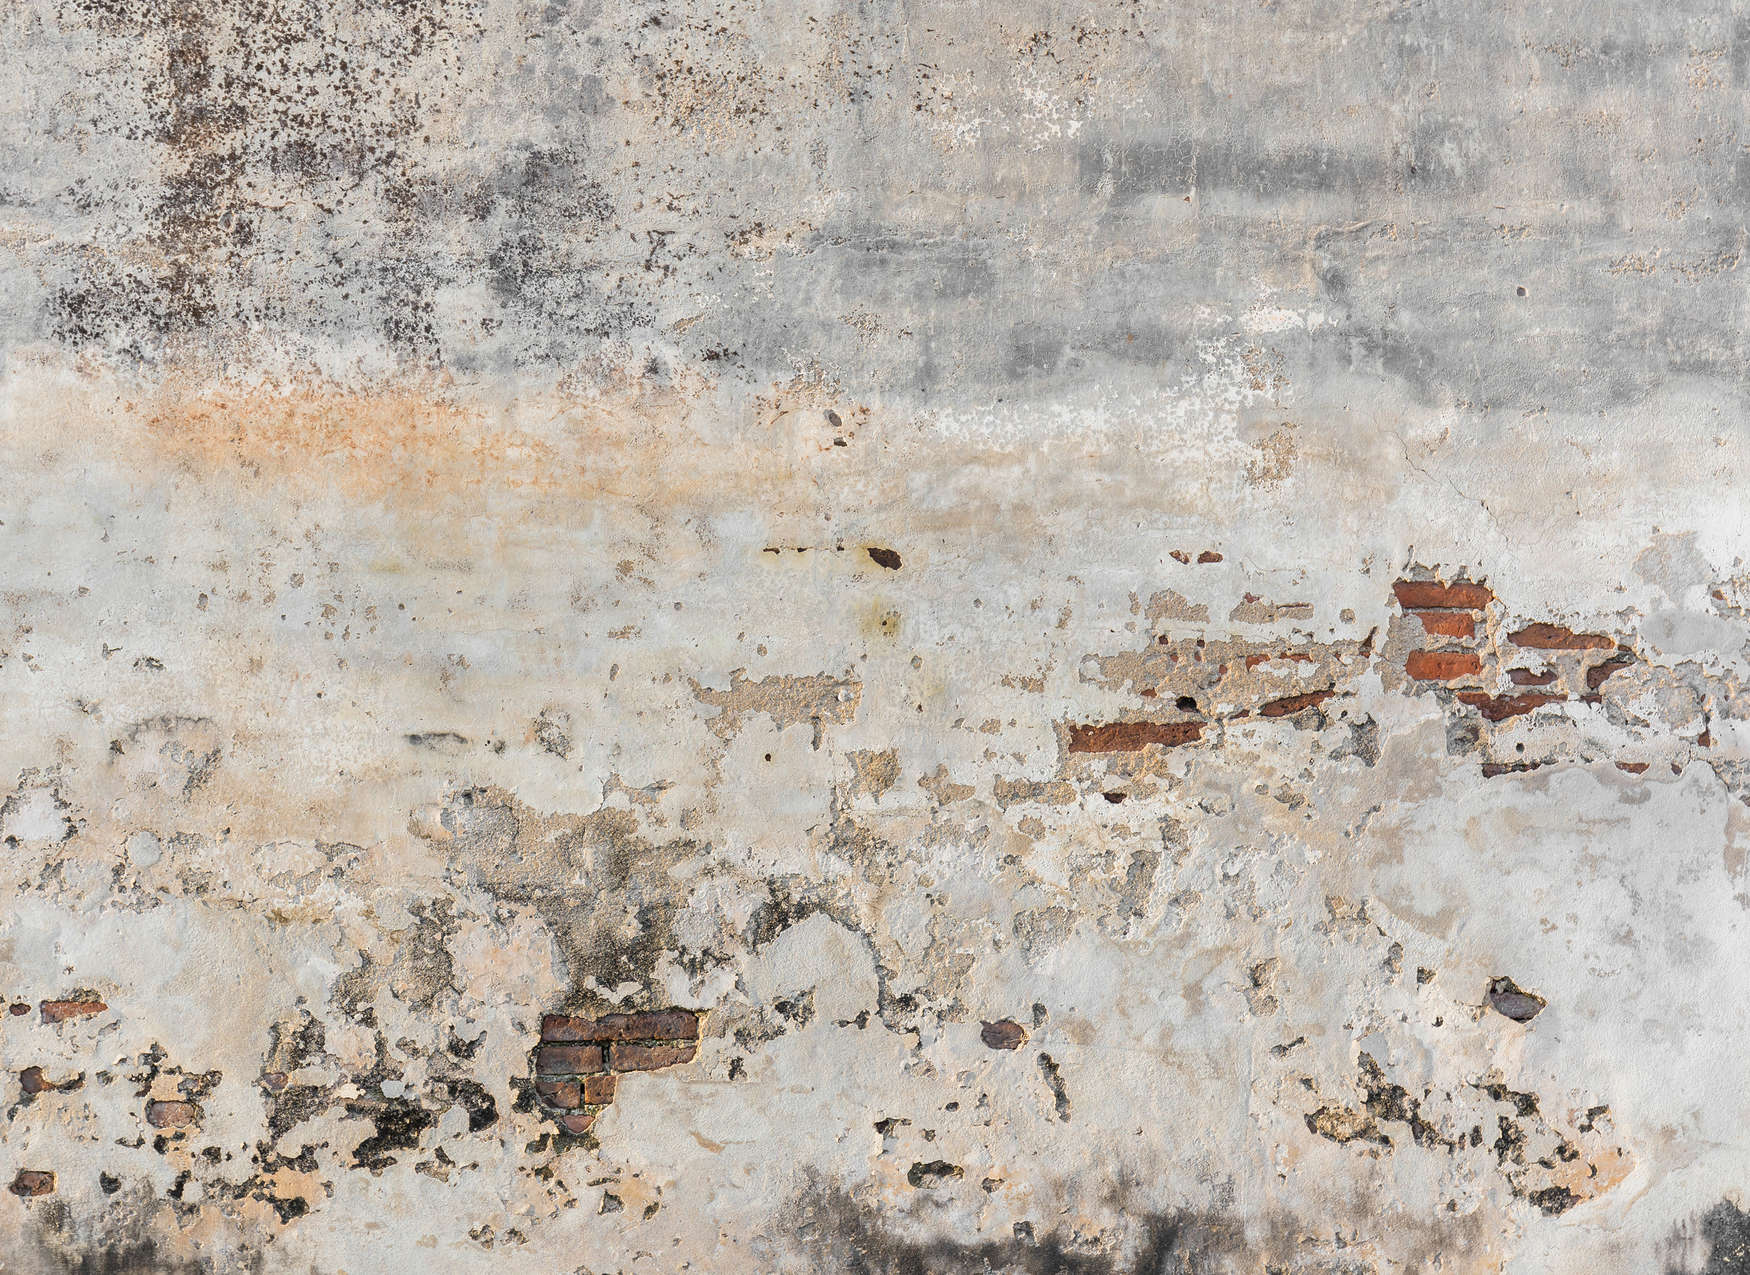             Fototapete alte & verputzte Ziegelsteinmauer – Grau, Braun
        